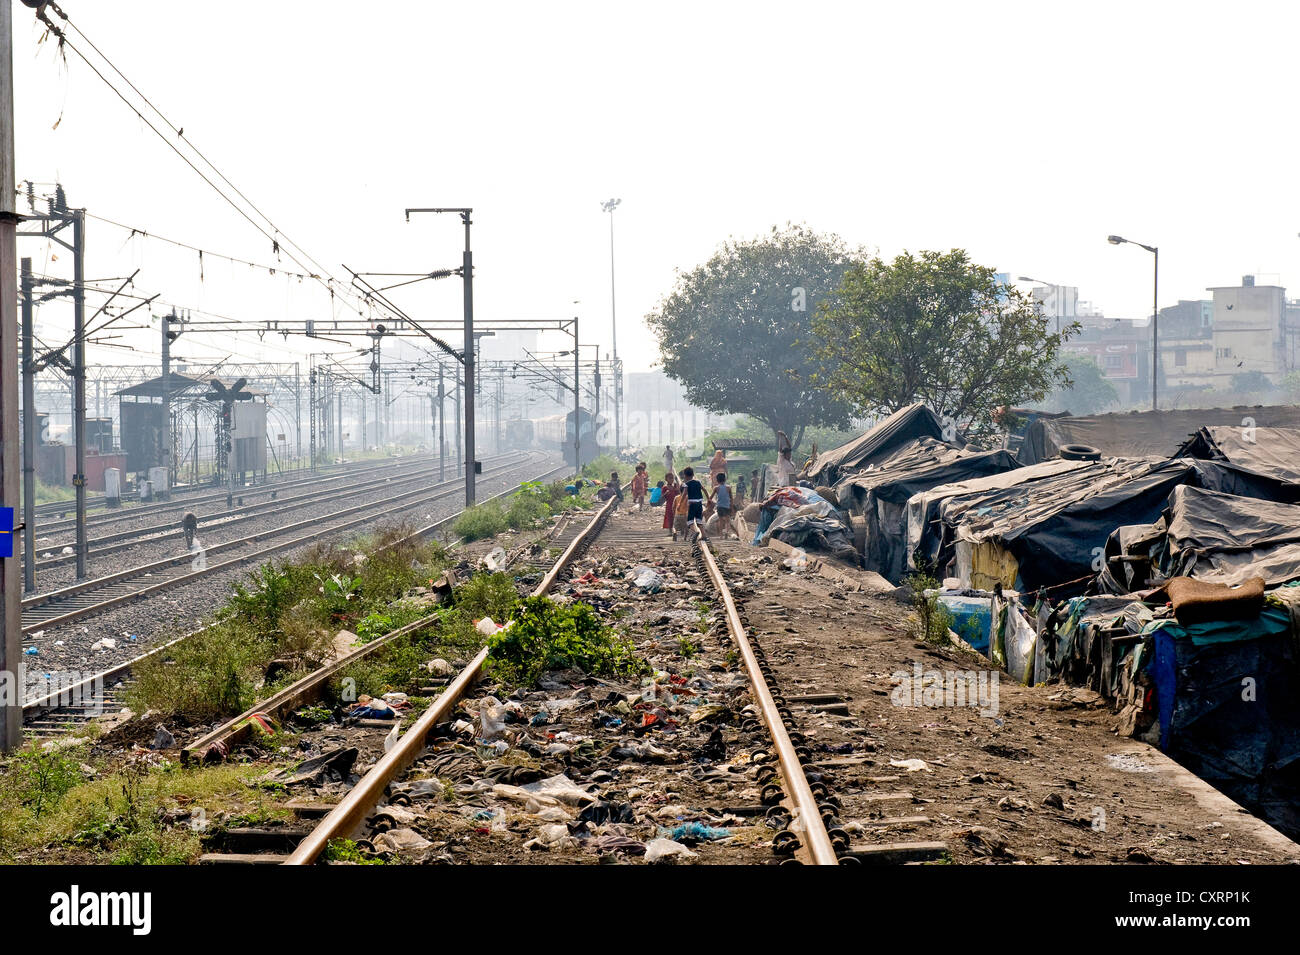 Les huttes des bidonvilles et les enfants jouant sur les voies de chemin de fer, Shibpur, district ou Haora Howrah, Calcutta, Inde, Asie , Banque D'Images